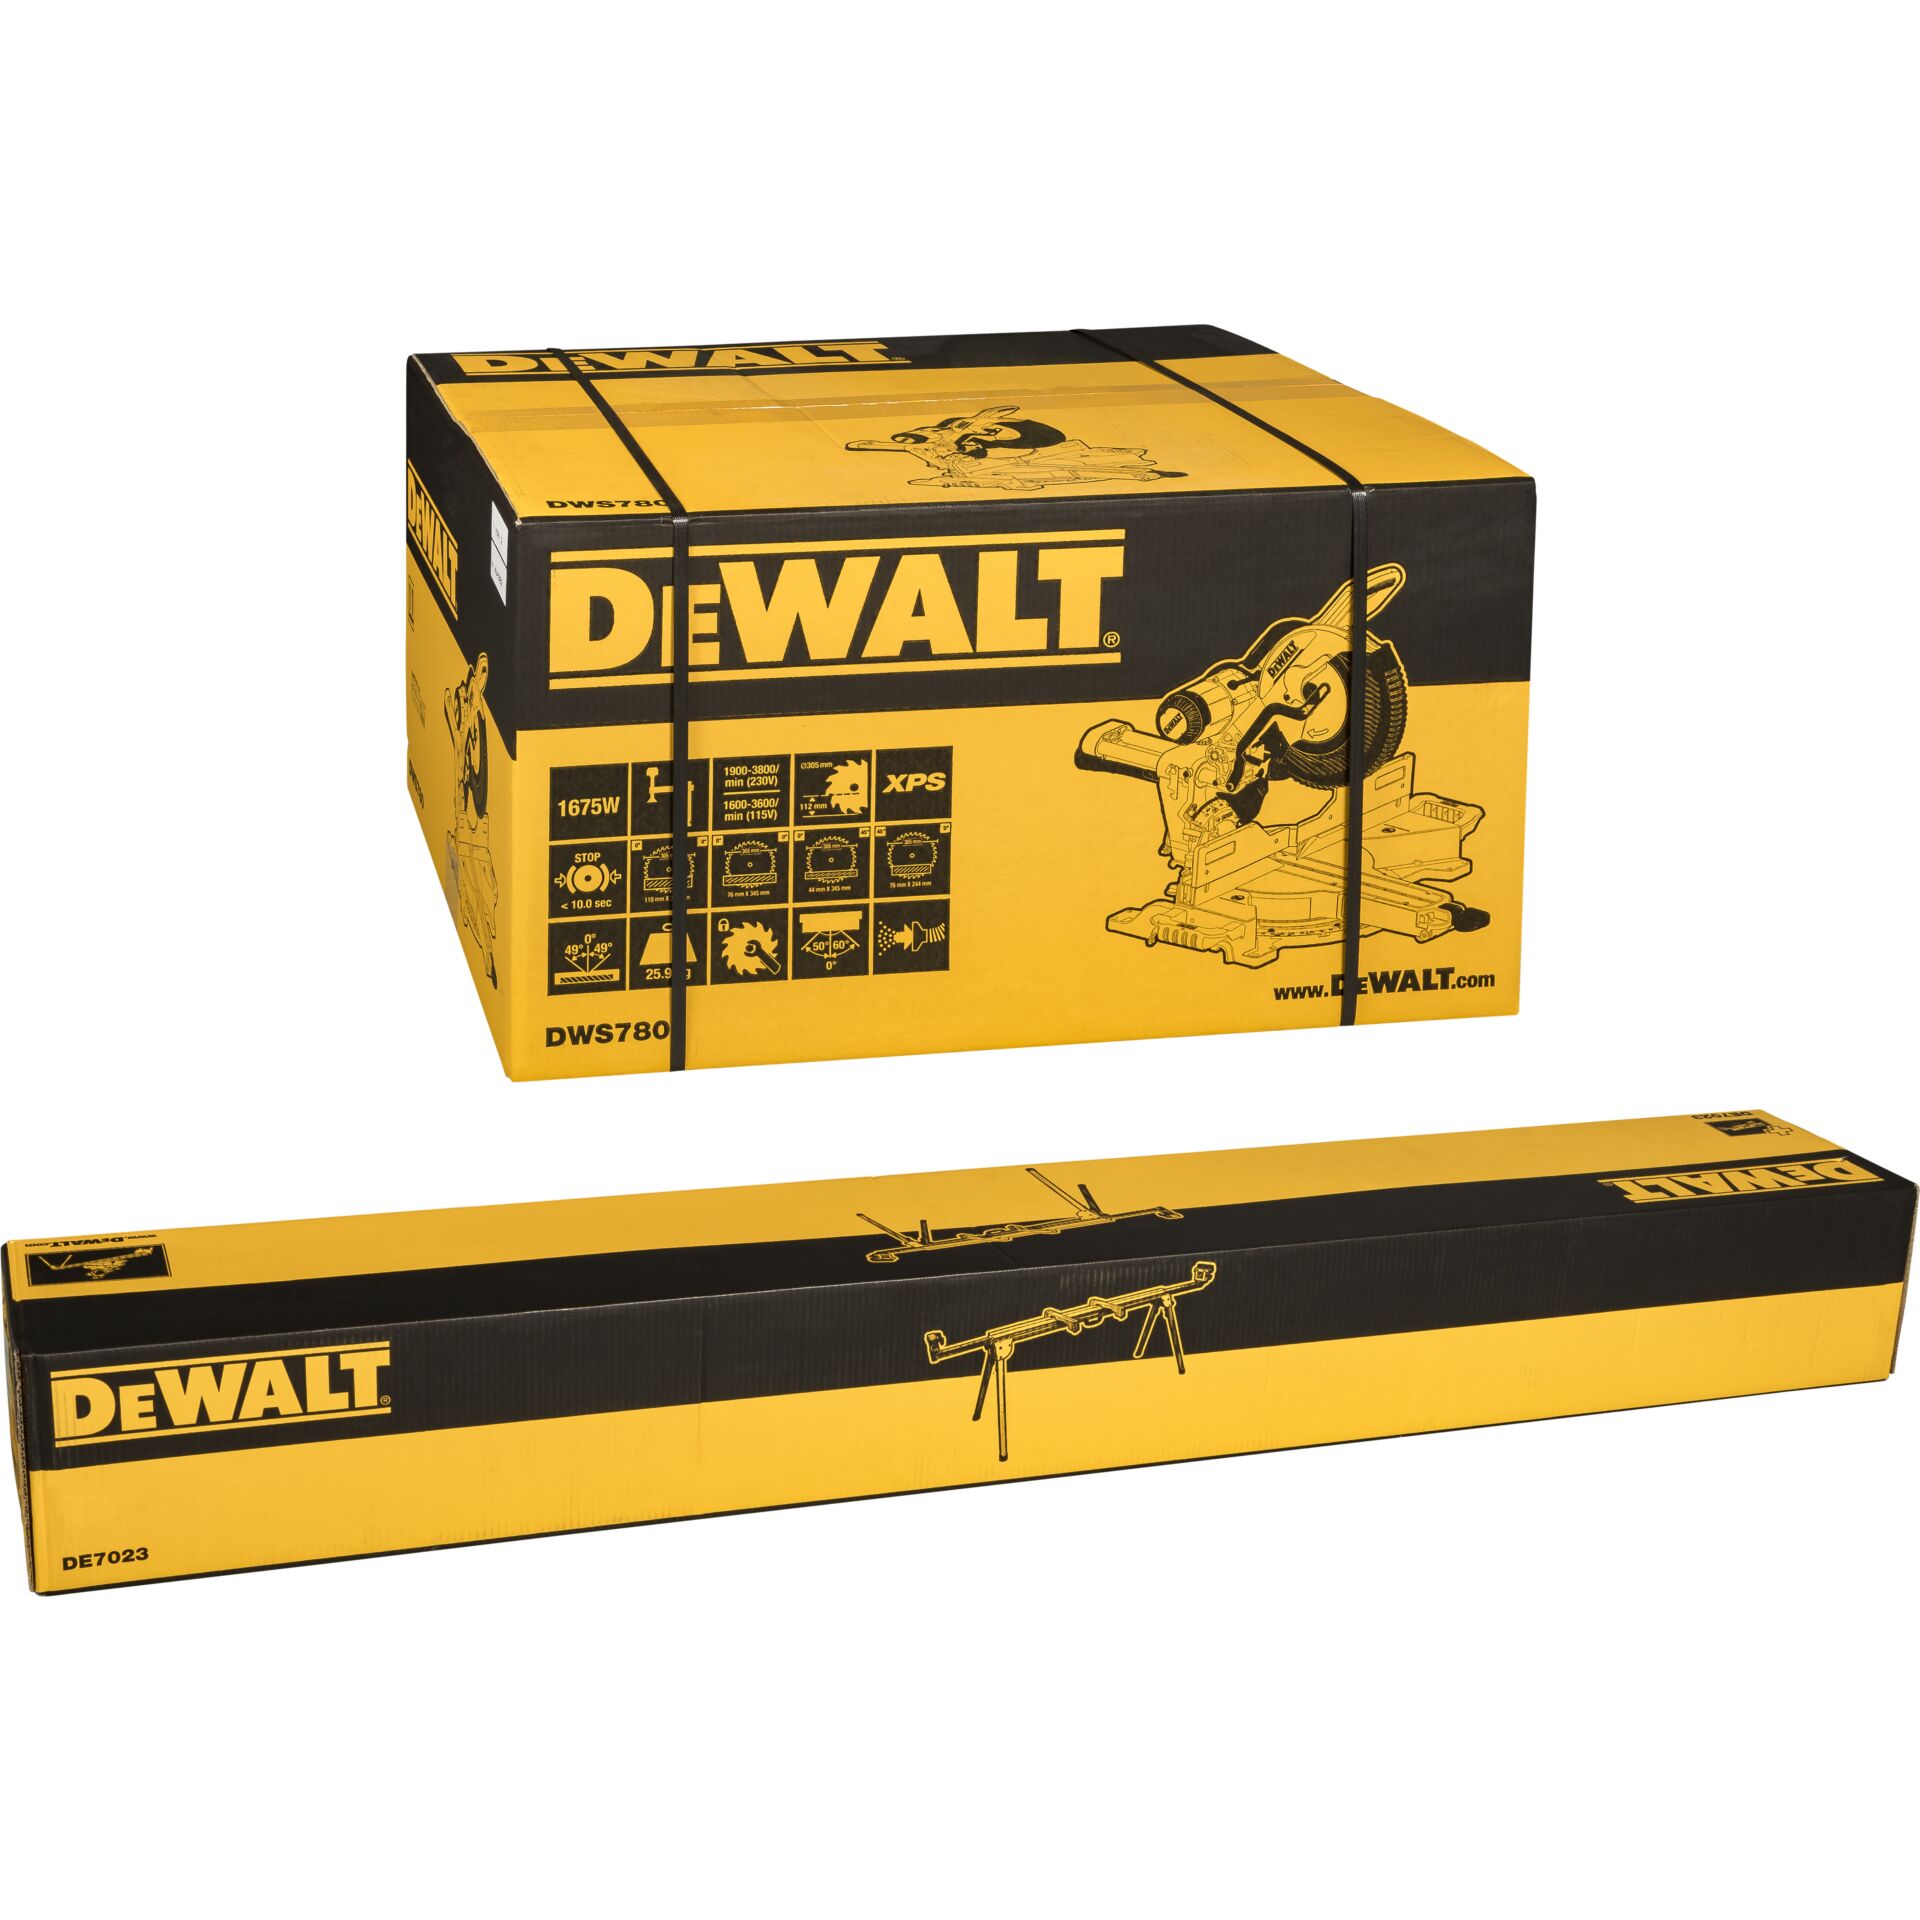 DeWalt DWS780KIT Paneelsägen-Set incl. Unterges. - DeWalt - Autoscatto Store